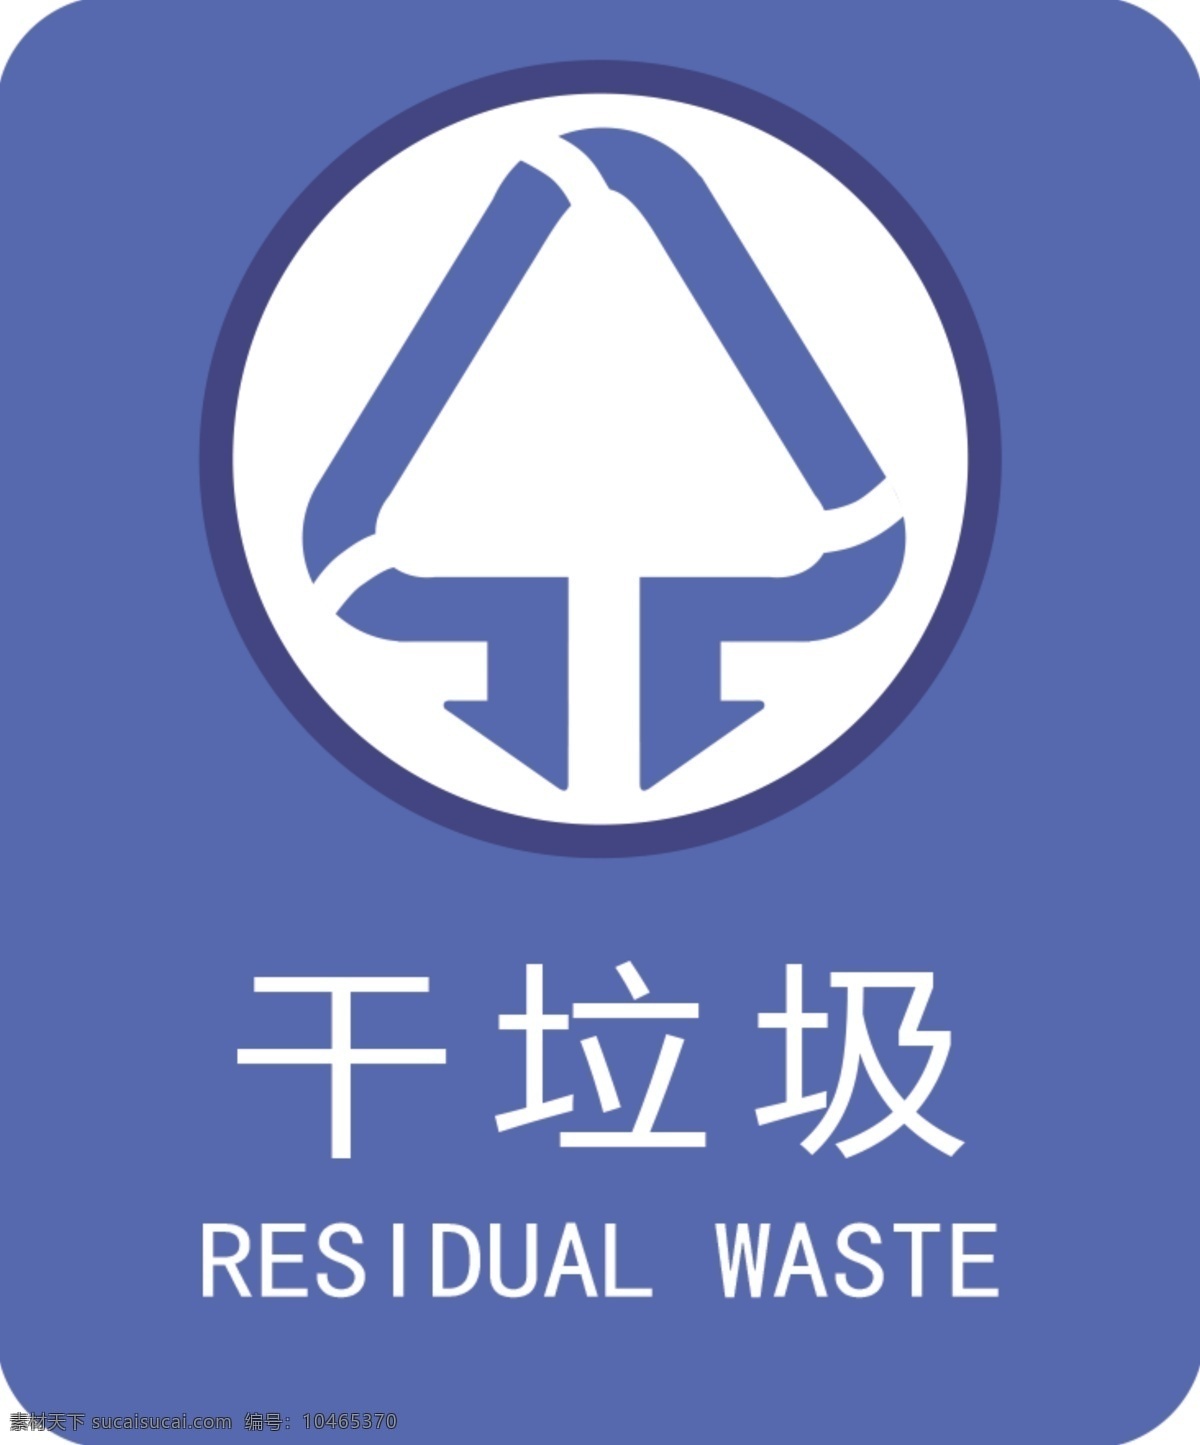 干垃圾图片 干垃圾 垃圾 垃圾分类 垃圾标签 垃圾标志